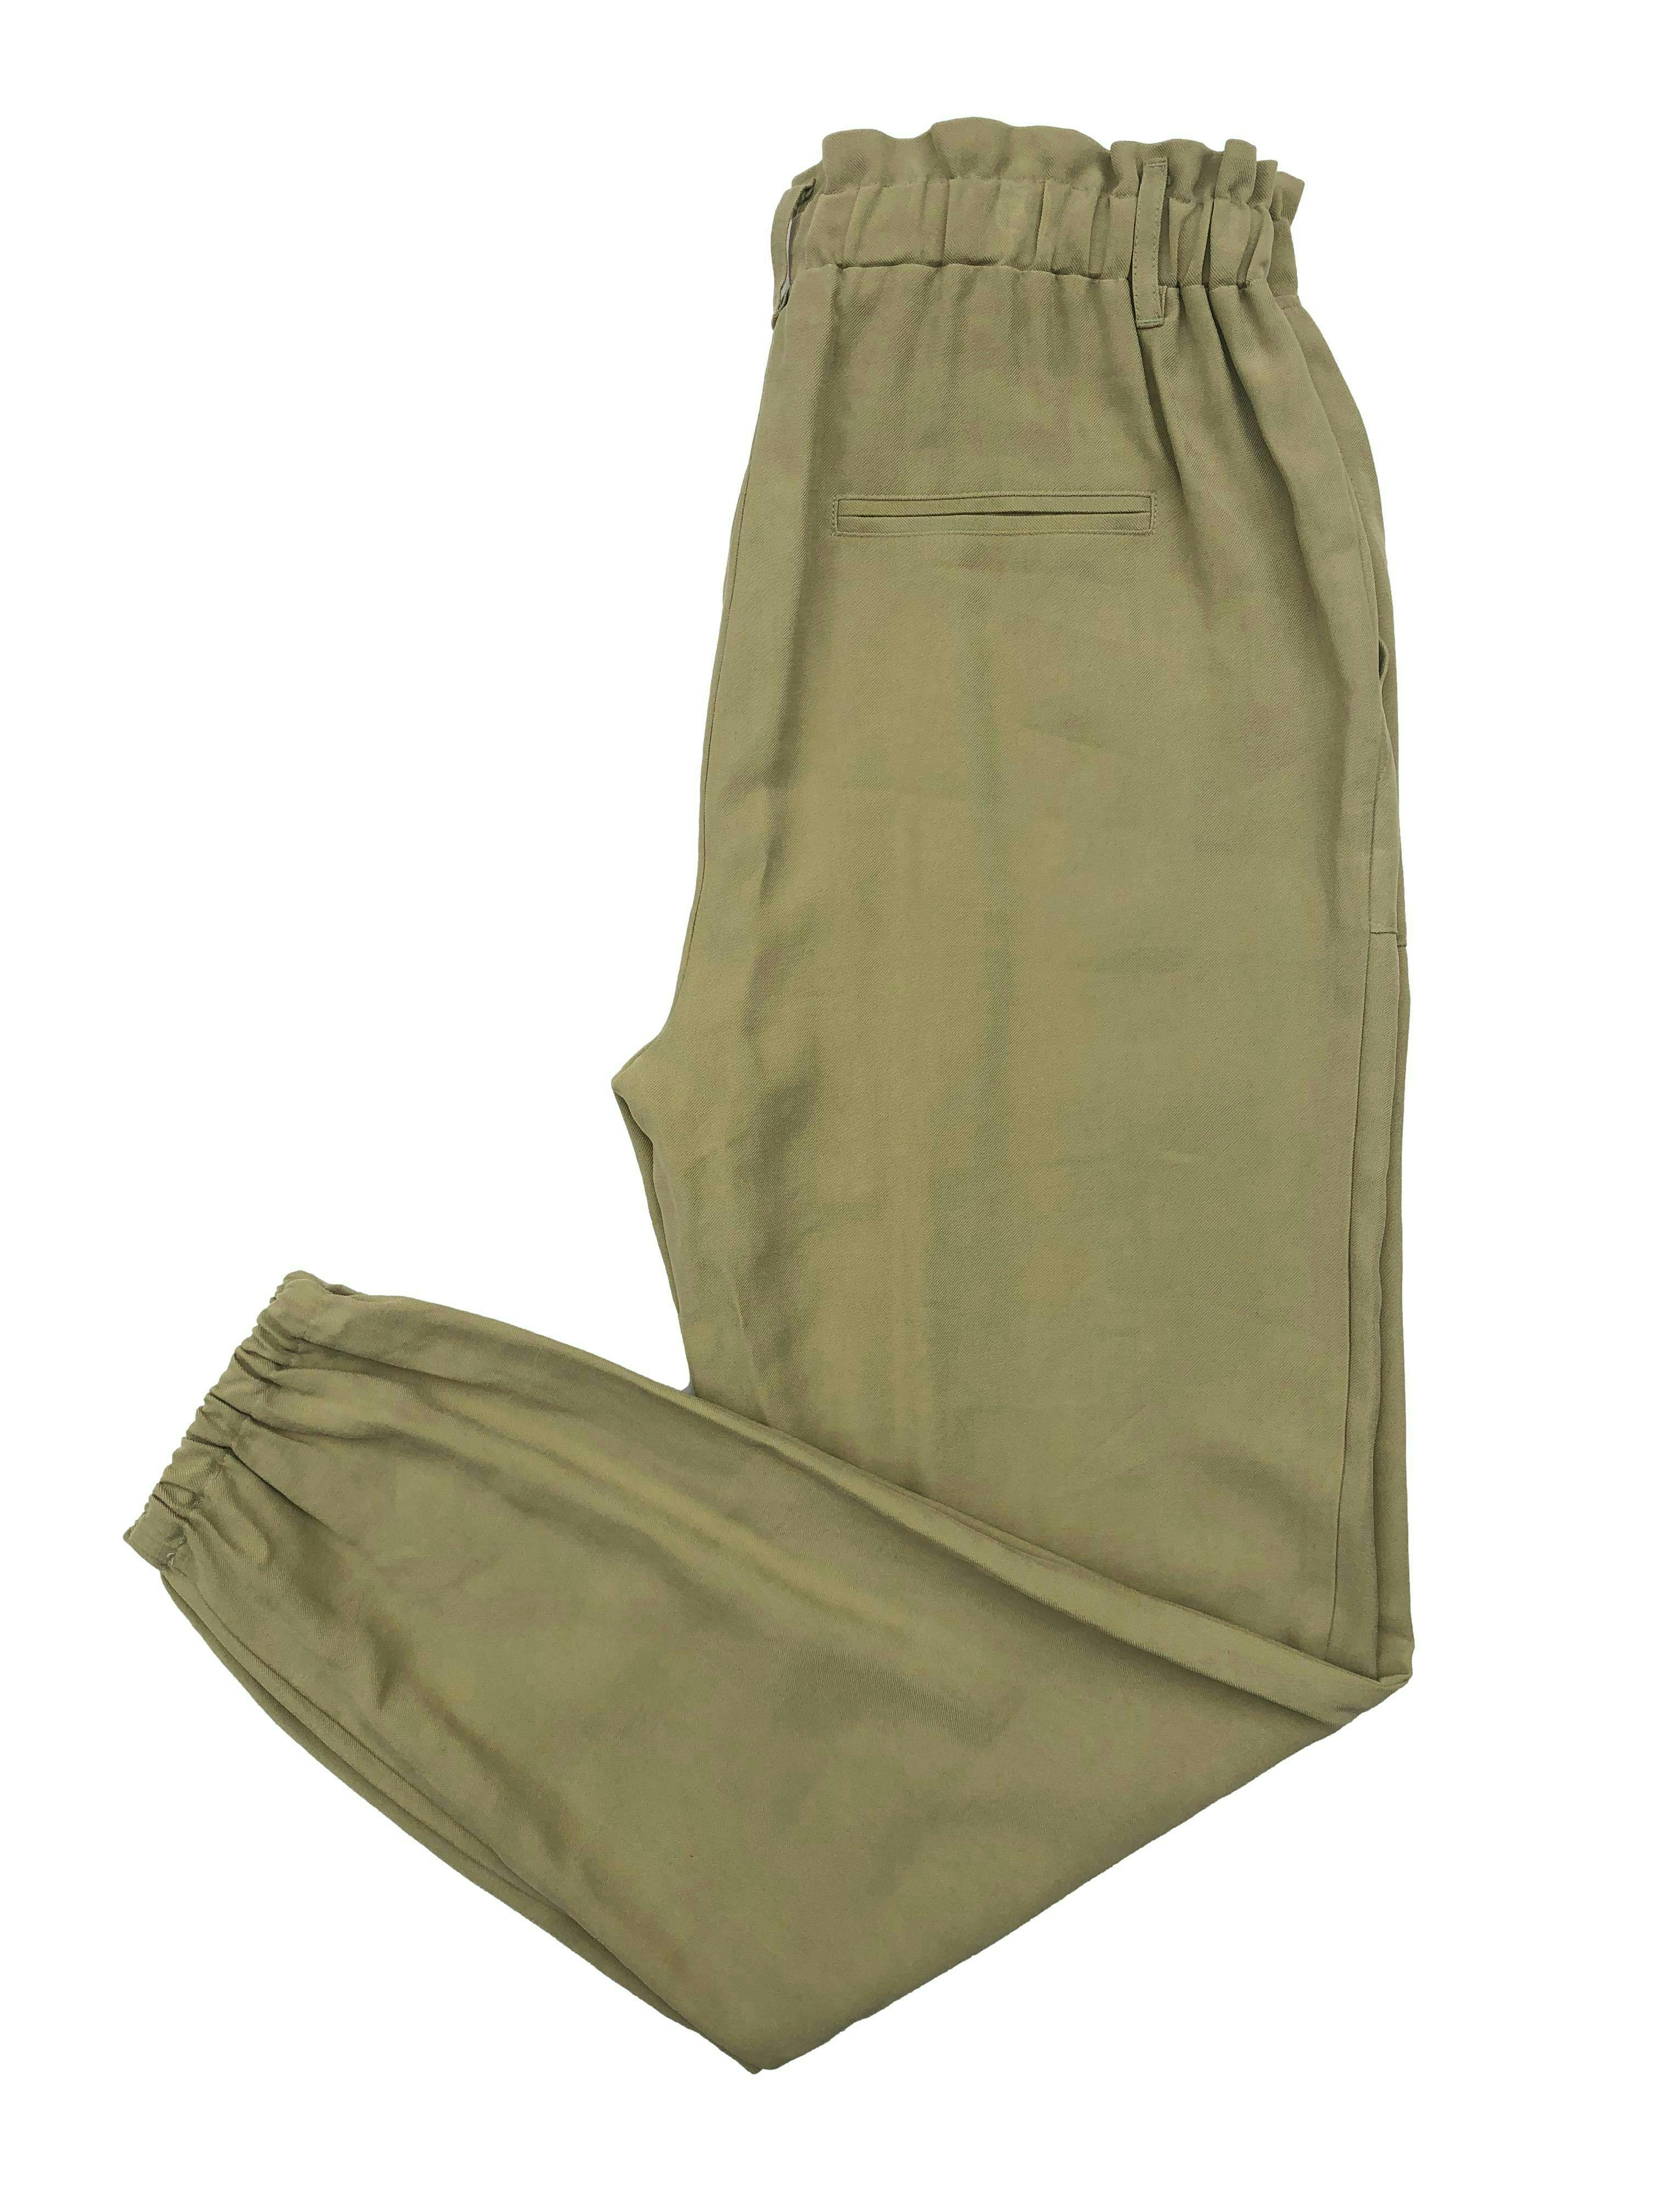 Pantalón INC verde, tela fresca, elástico en cintura y basta, bolsillos laterales. Cintura 68cm largo 100cm